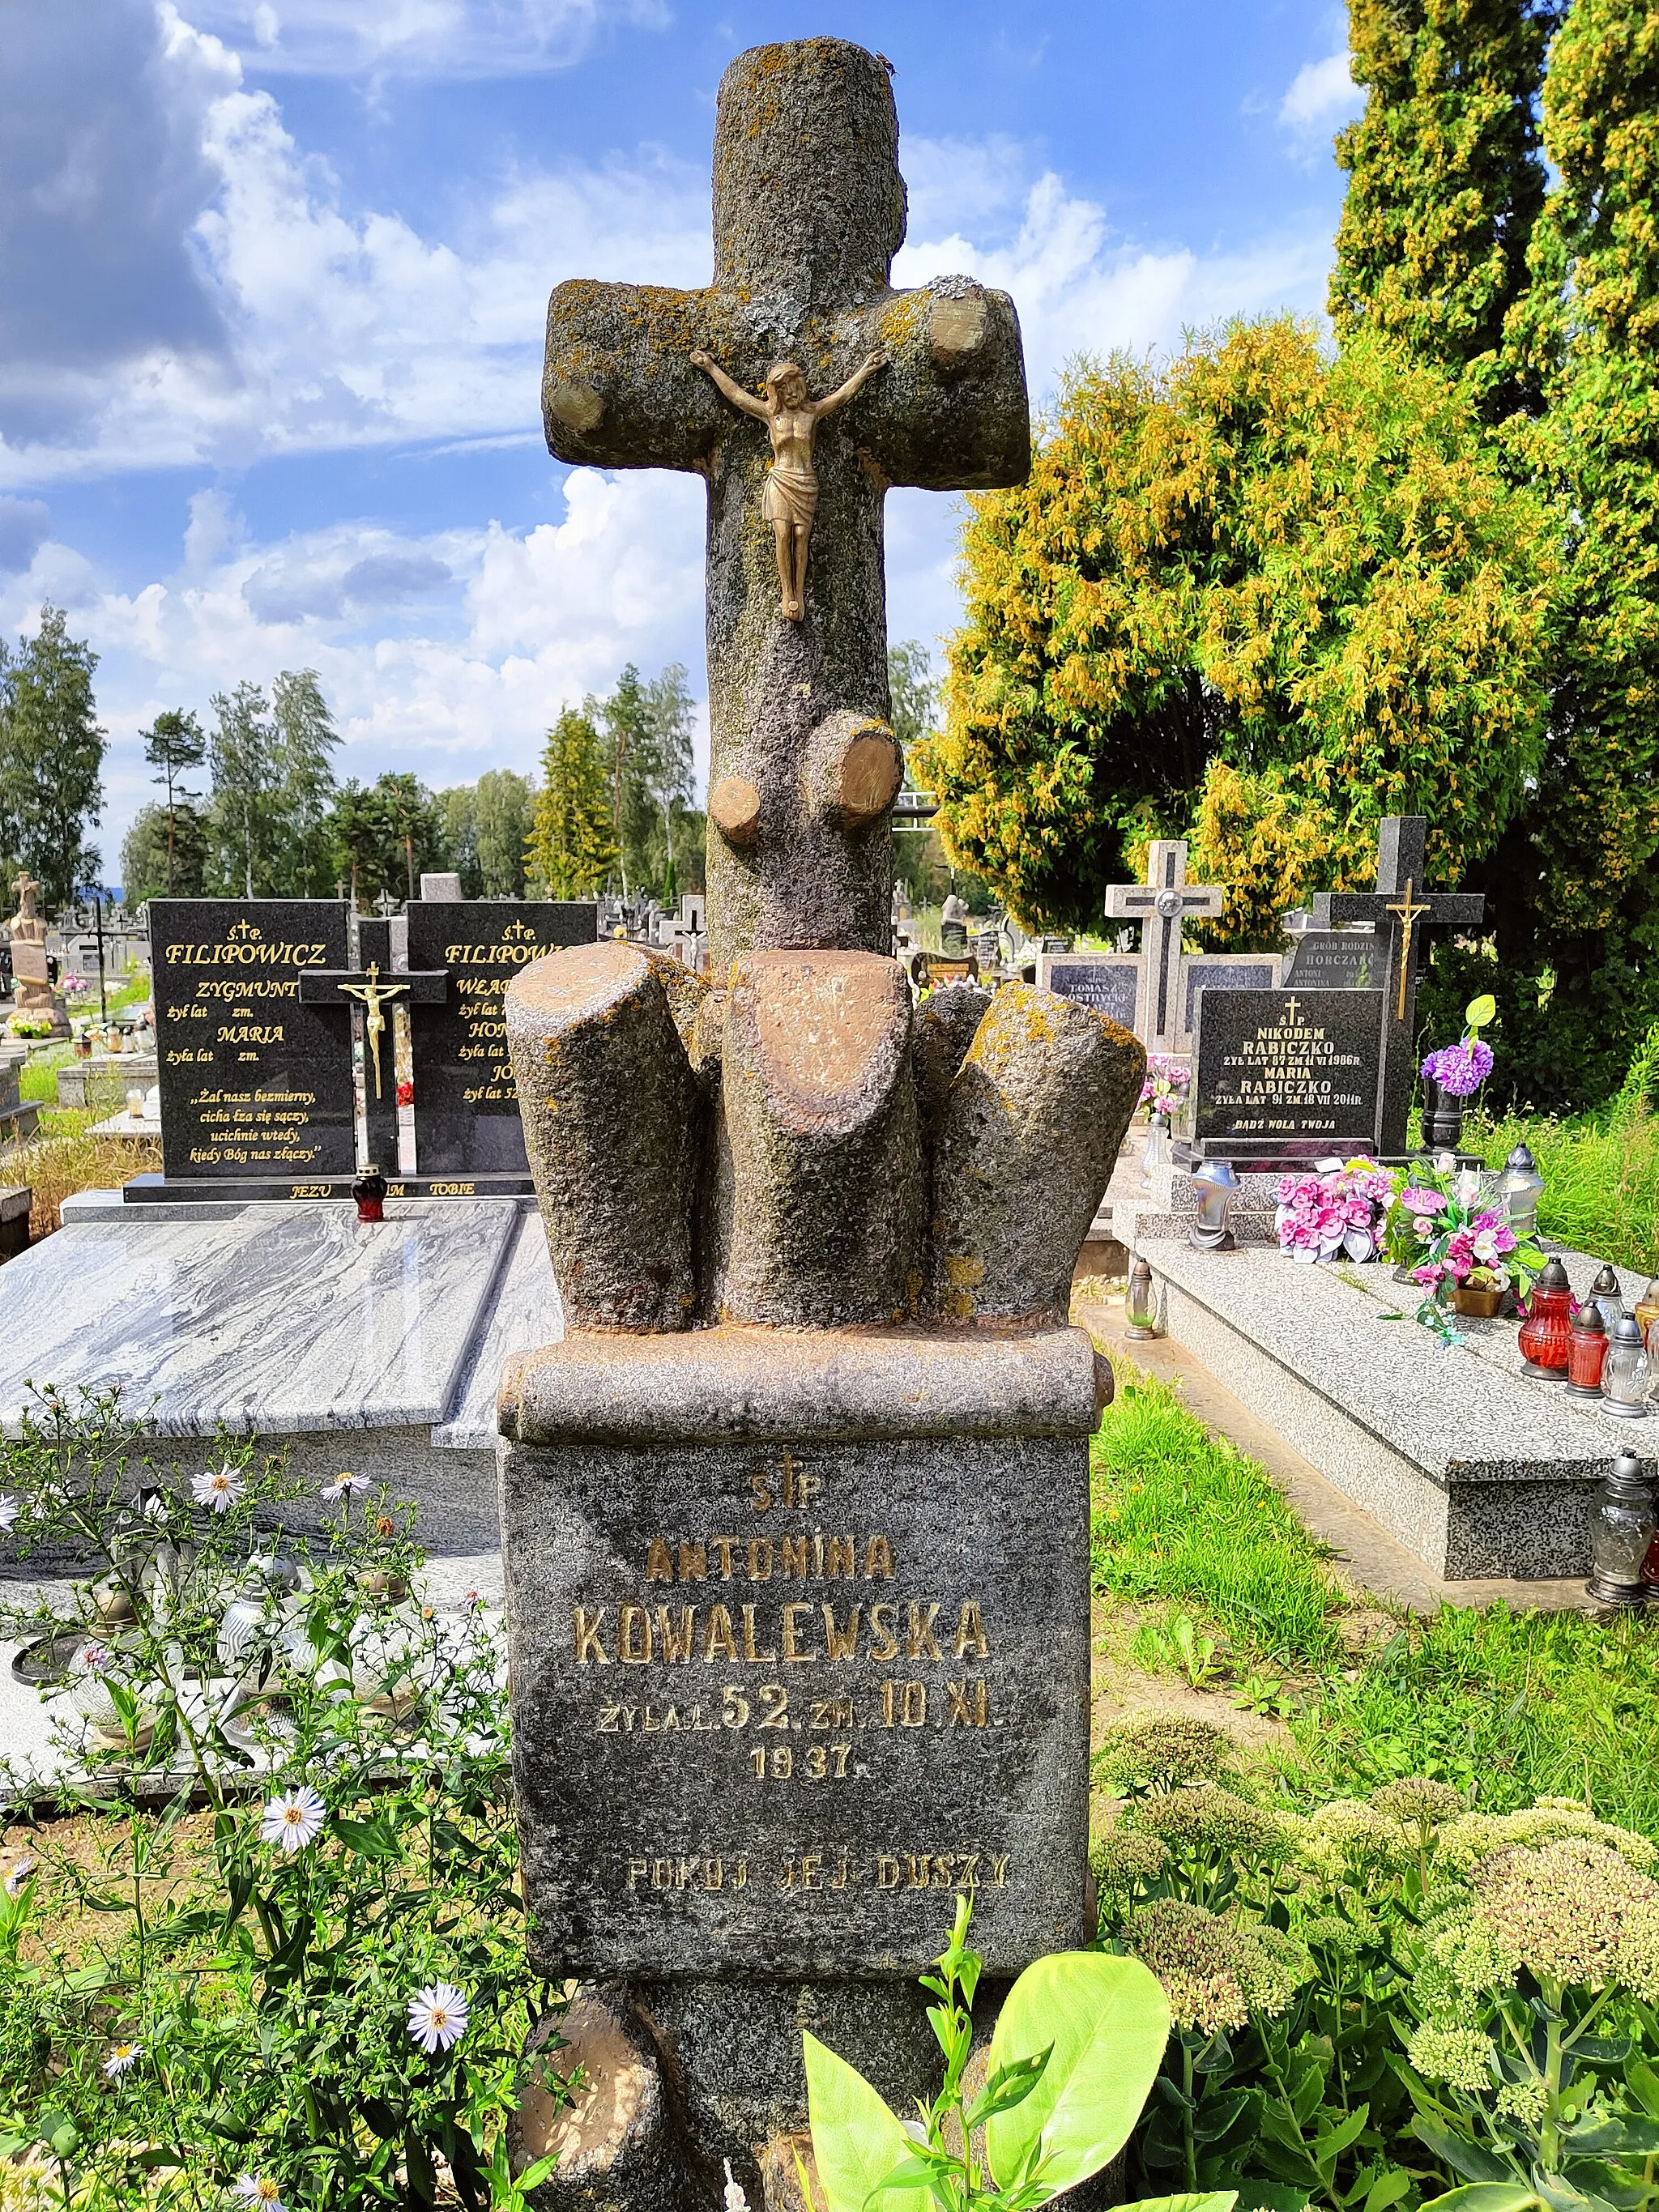 Photo showing: Grób na cmentarzu rzymsko-katolickim w Klimówce:
"Ś. + P. / ANTONINA / KOWALEWSKA / ŻYŁA LAT 52. ZM. 10.XI. / 1937. / POKÓJ JEJ DUSZY"